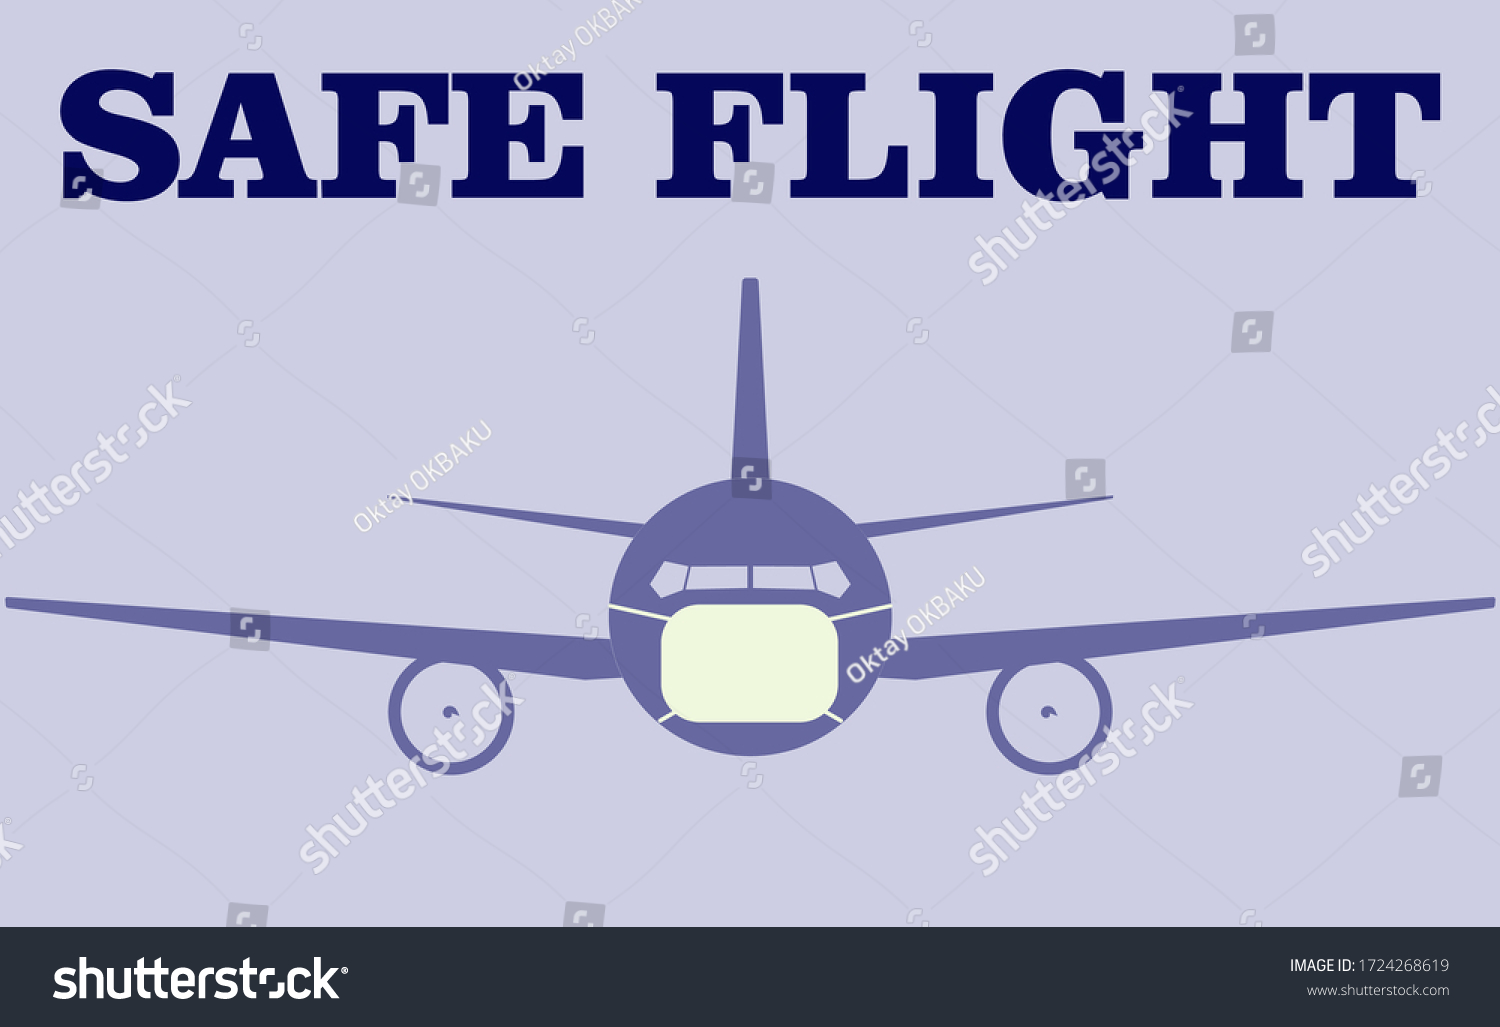 Safe flight